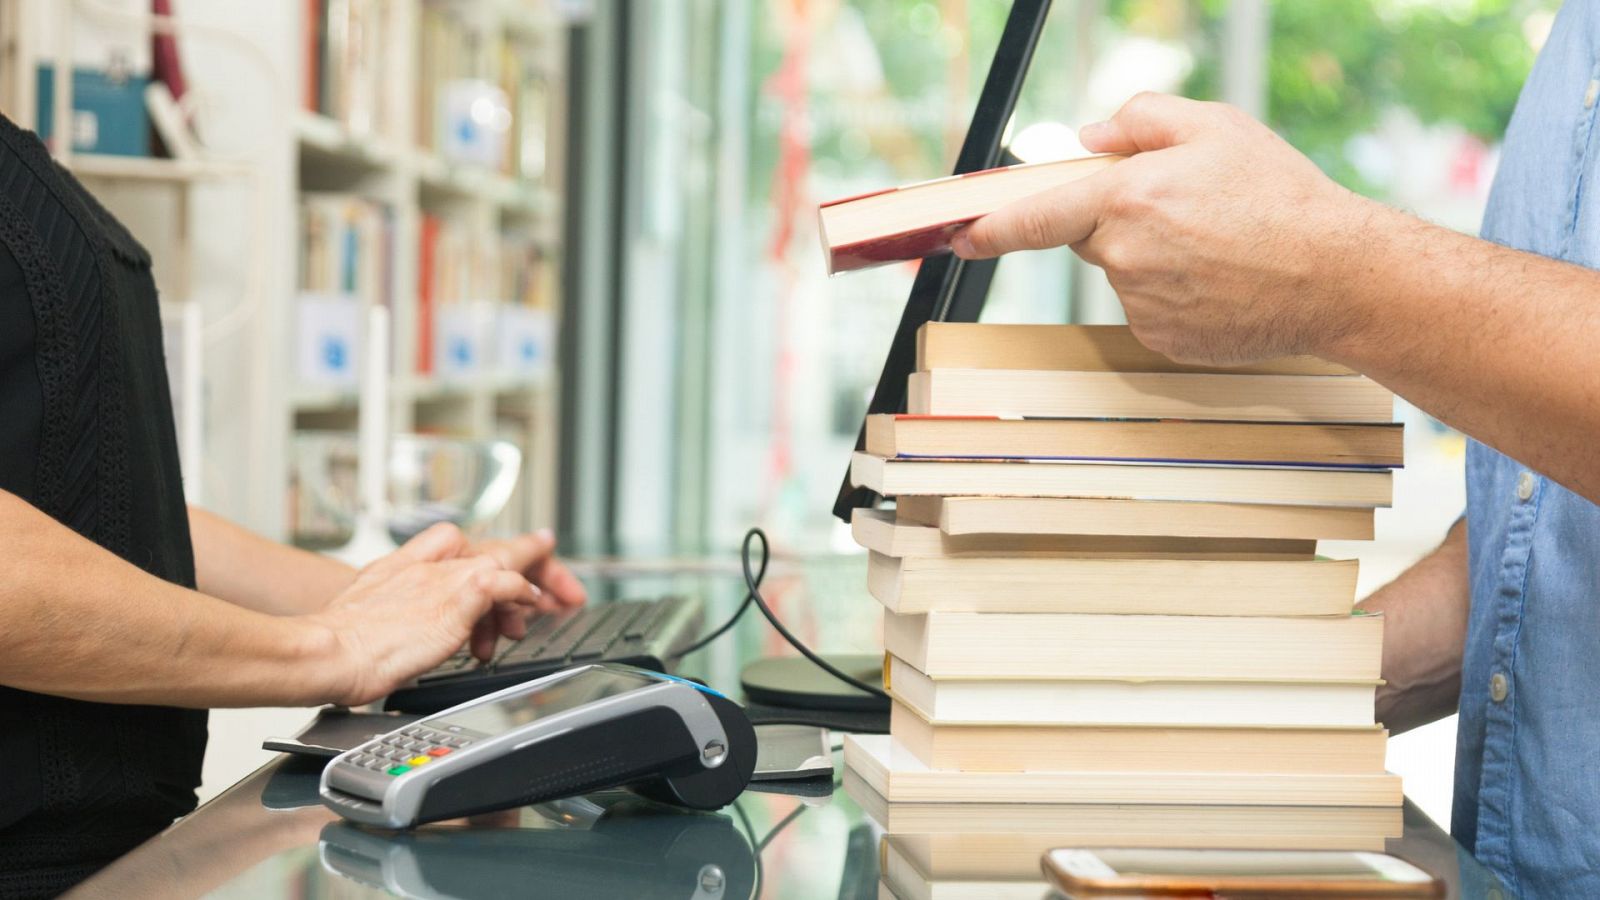 Aumenta la compra de dispositivos electrónicos, libros y uniformes, según Milanuncios - Ver ahora